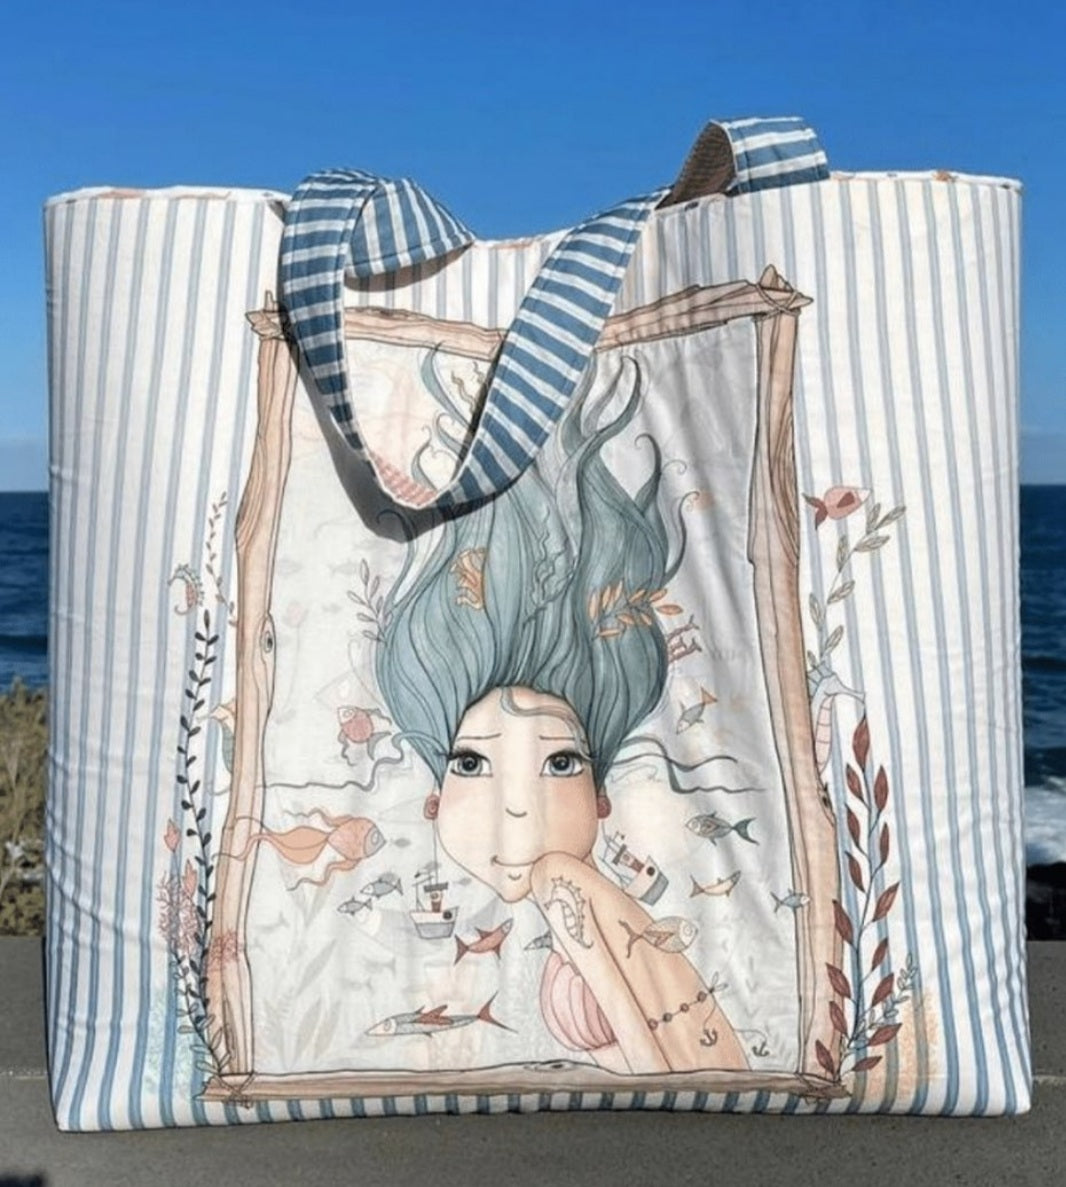 Panel bolsa playa el altillo de los duendes